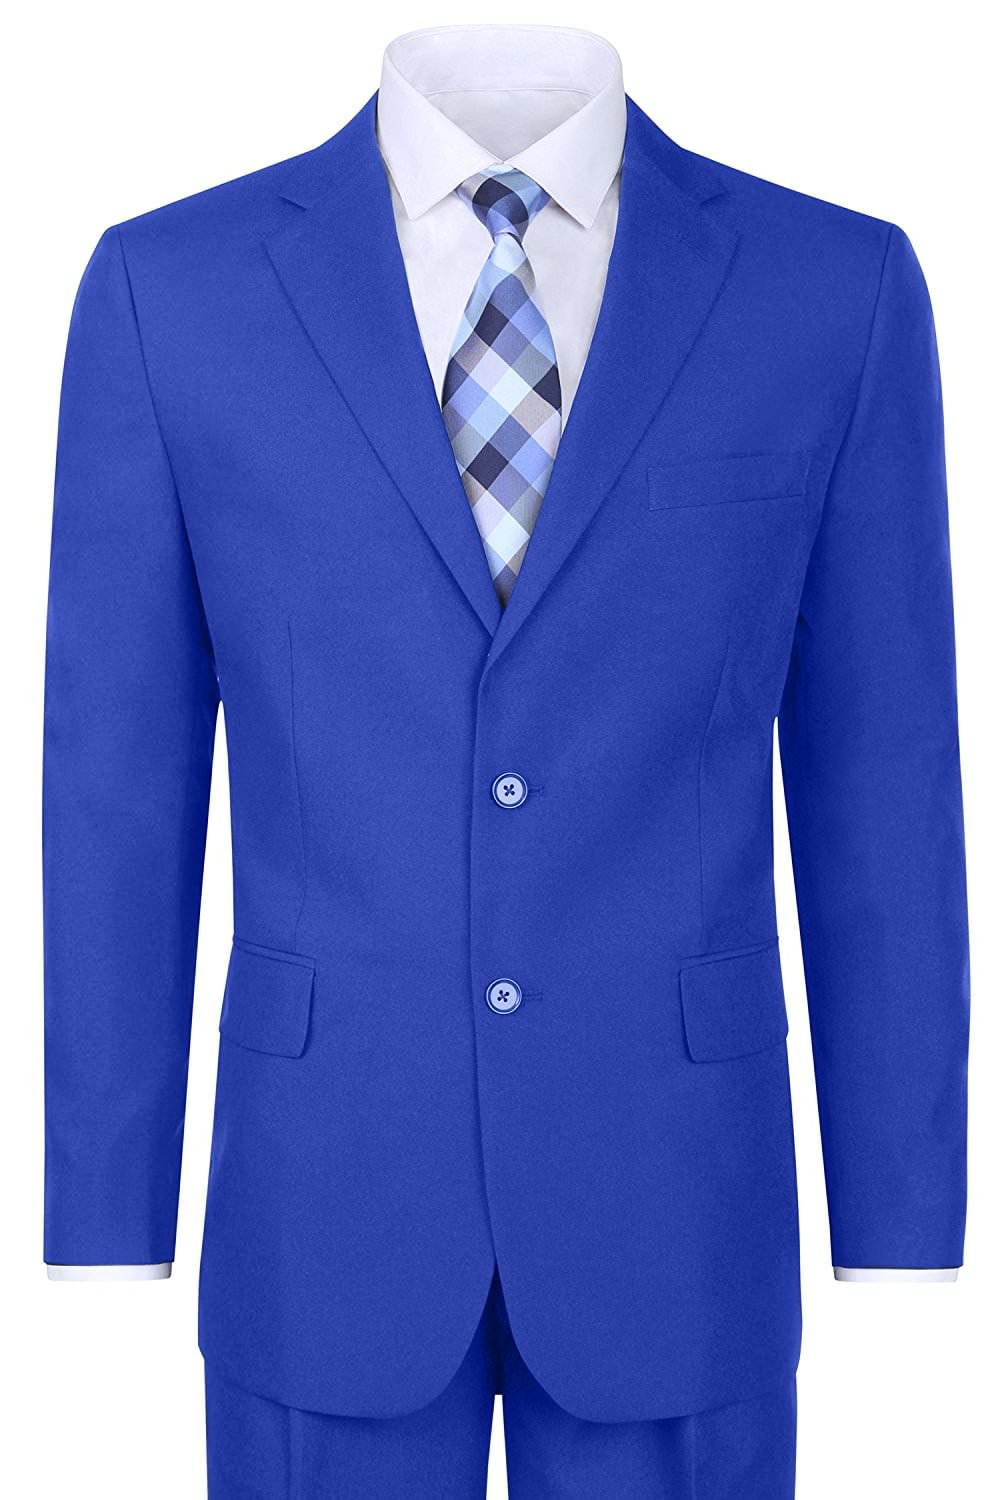 Men's Classic 2 Button Suit - Regular Fit - Walmart.com